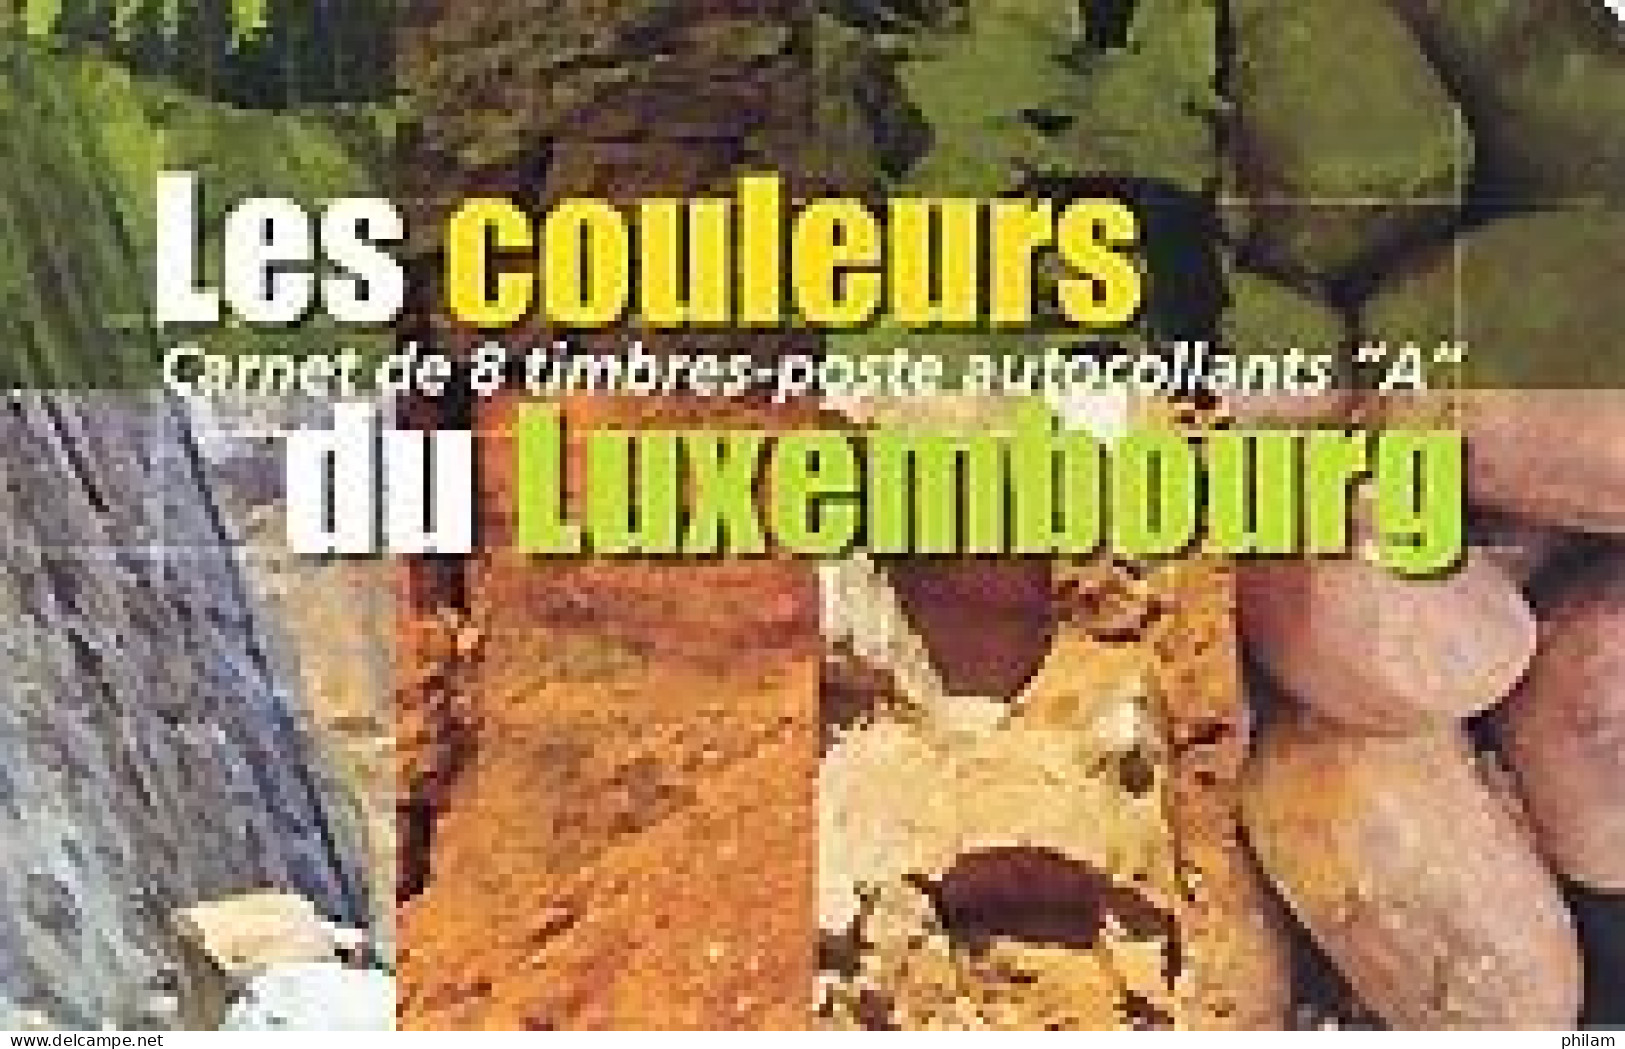 LUXEMBOURG 2005 - Couleurs Du Luxembourg: Minéraux - 1 Carnet - Minéraux